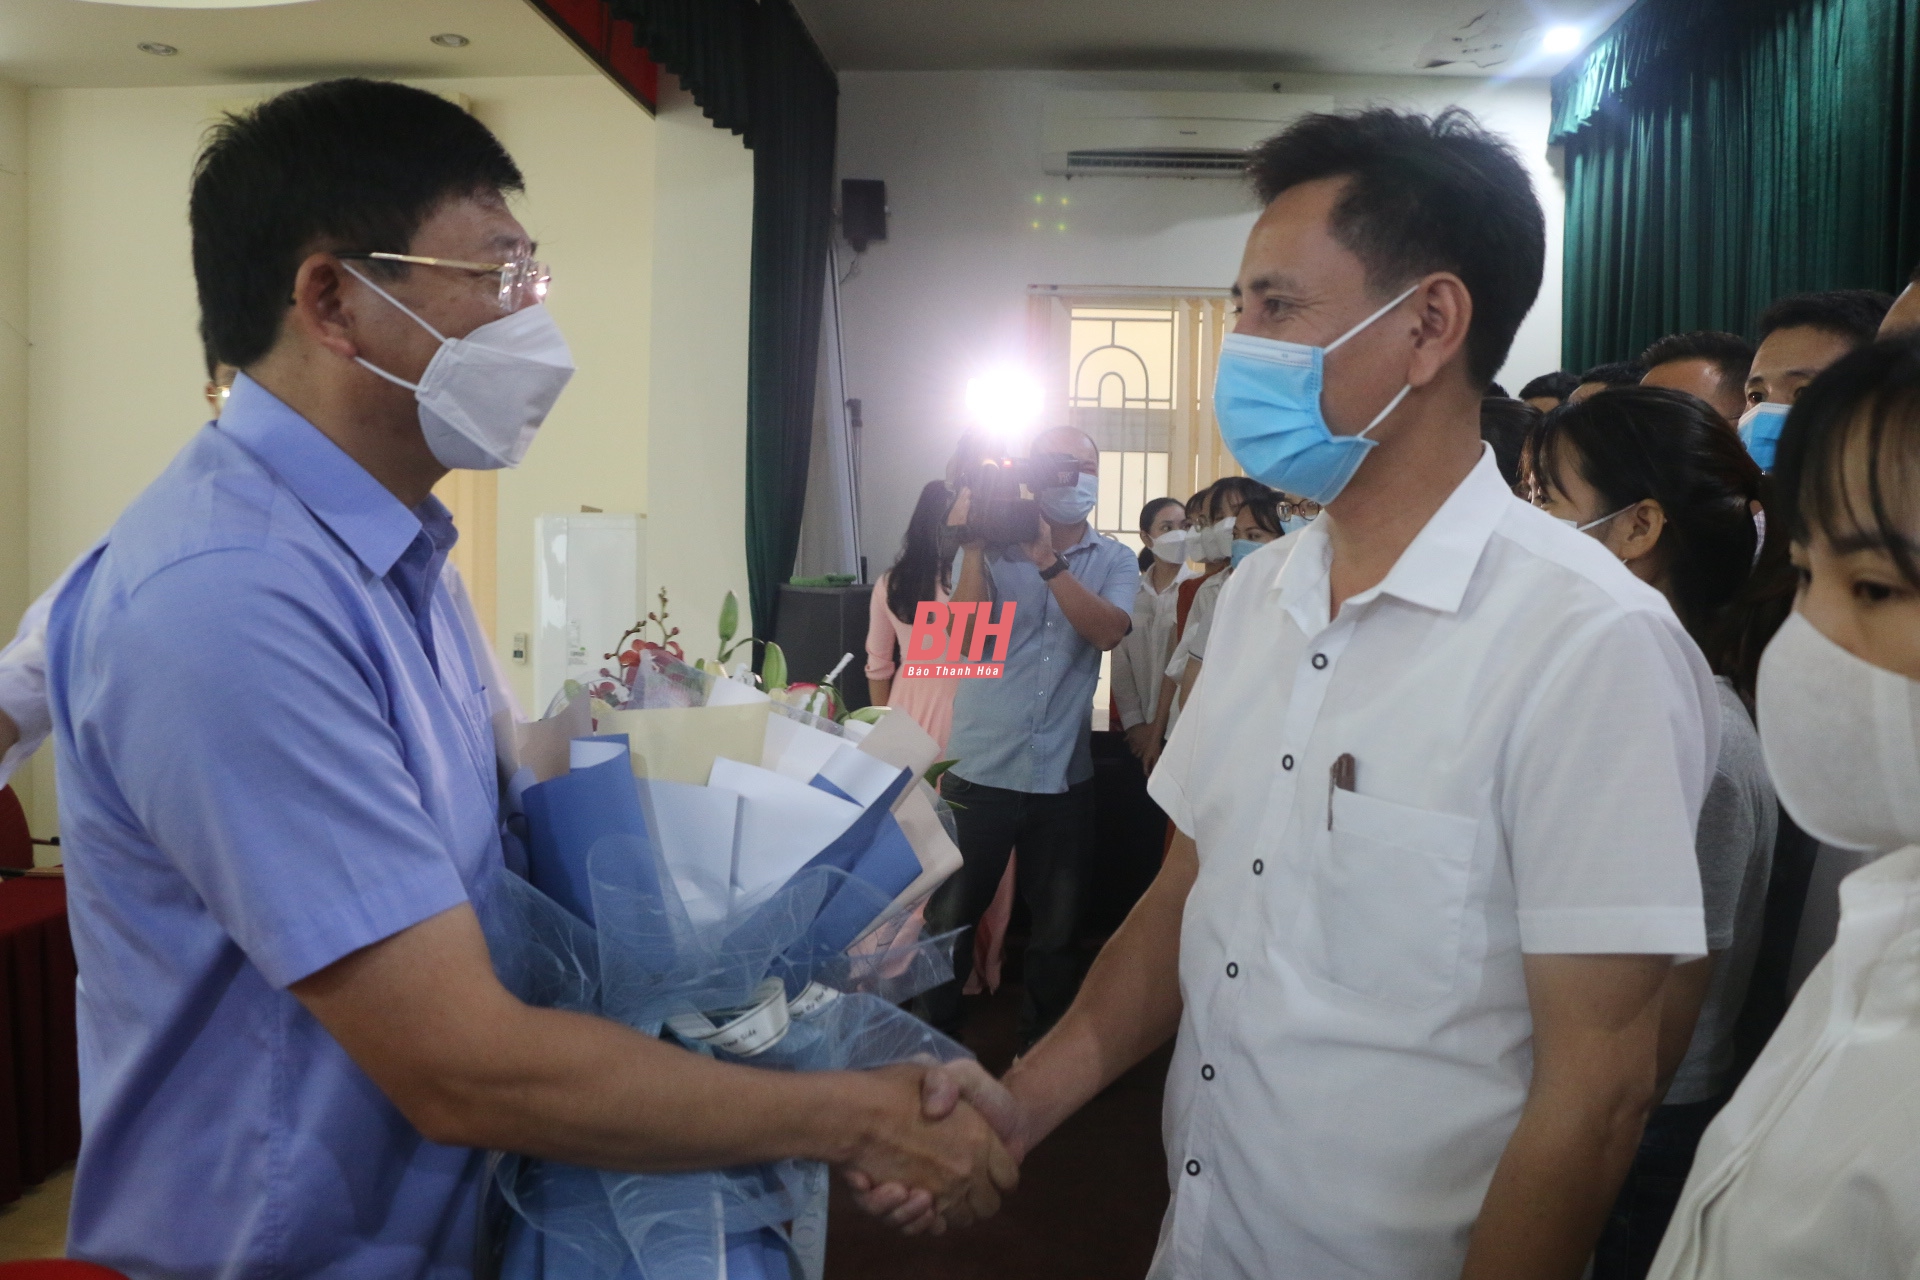 100 bác sỹ, nhân viên y tế Thanh Hoá tiếp tục lên đường hỗ trợ tỉnh Bình Dương và Đồng Nai phòng chống dịch COVID-19